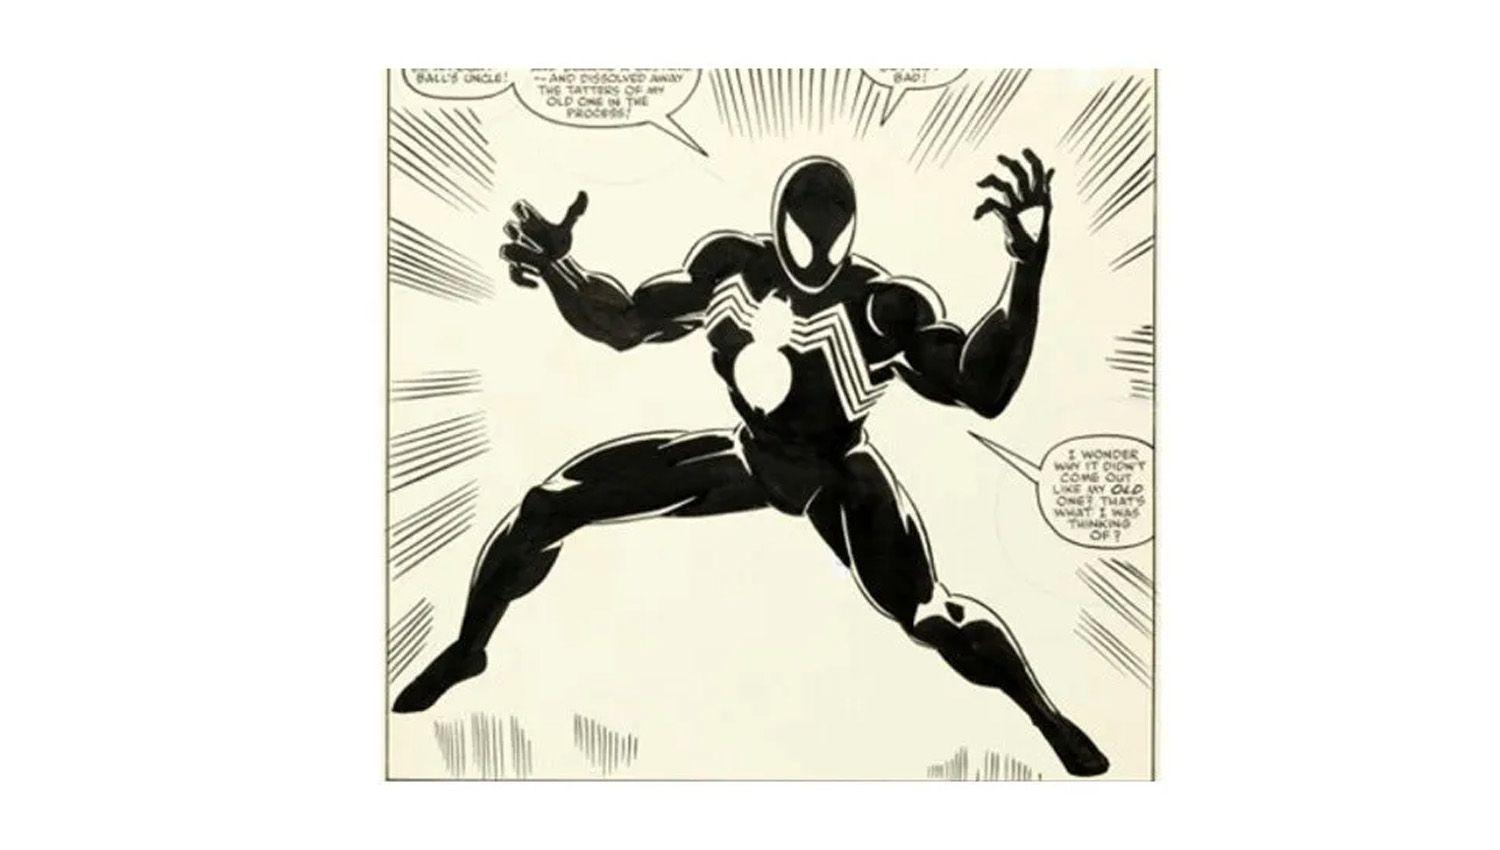 El traje de simbionte eventualmente conduciría a la aparición del personaje Venom